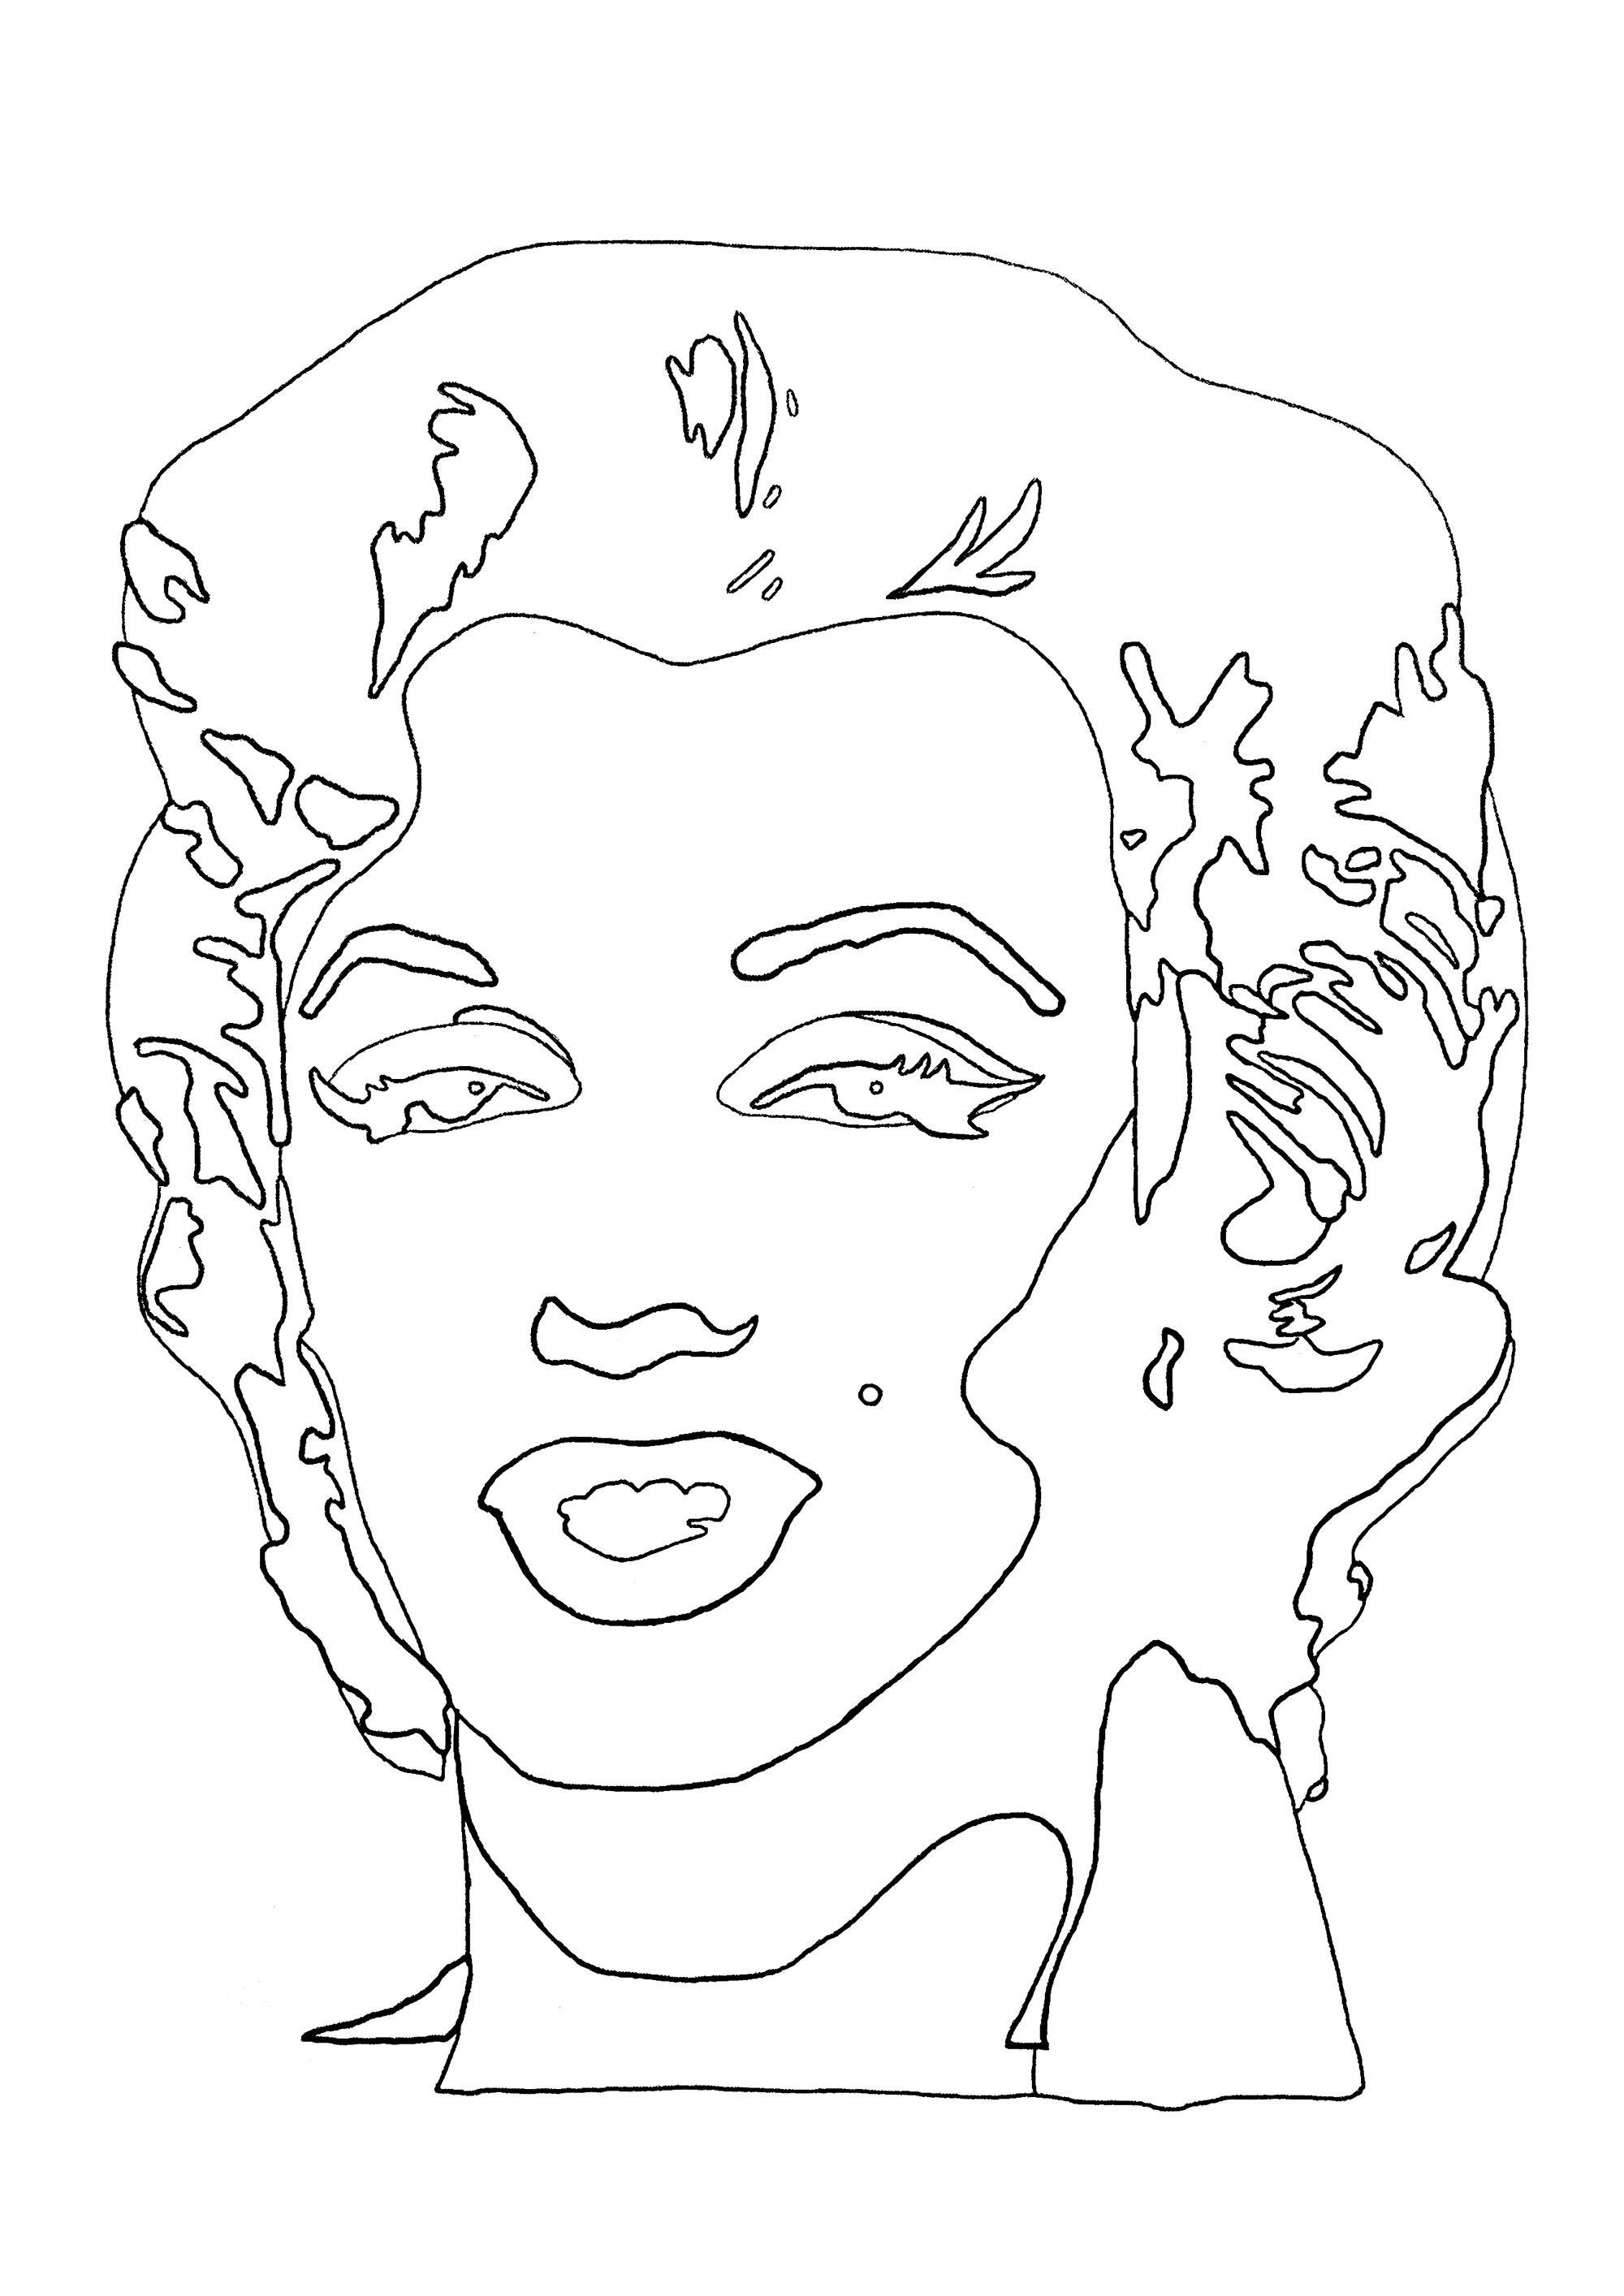 Colorazione creata a partire dal dipinto 'Shot Sage Blue Marilyn' di Andy Warhol. Dipinto con inchiostro serigrafico e acrilico, 'Shot Sage Blue Marilyn' è uno dei cinque ritratti di un metro per un metro dipinti con colori vivaci e contrastanti che il maestro della Pop Art realizzò nel 1964 a partire da una foto per la promozione del film Niagara del 1953. Con il suo viso rosa, i capelli biondi e il rossetto marcato, l'attrice sfoggia un sorriso enigmatico su uno sfondo blu turchese.